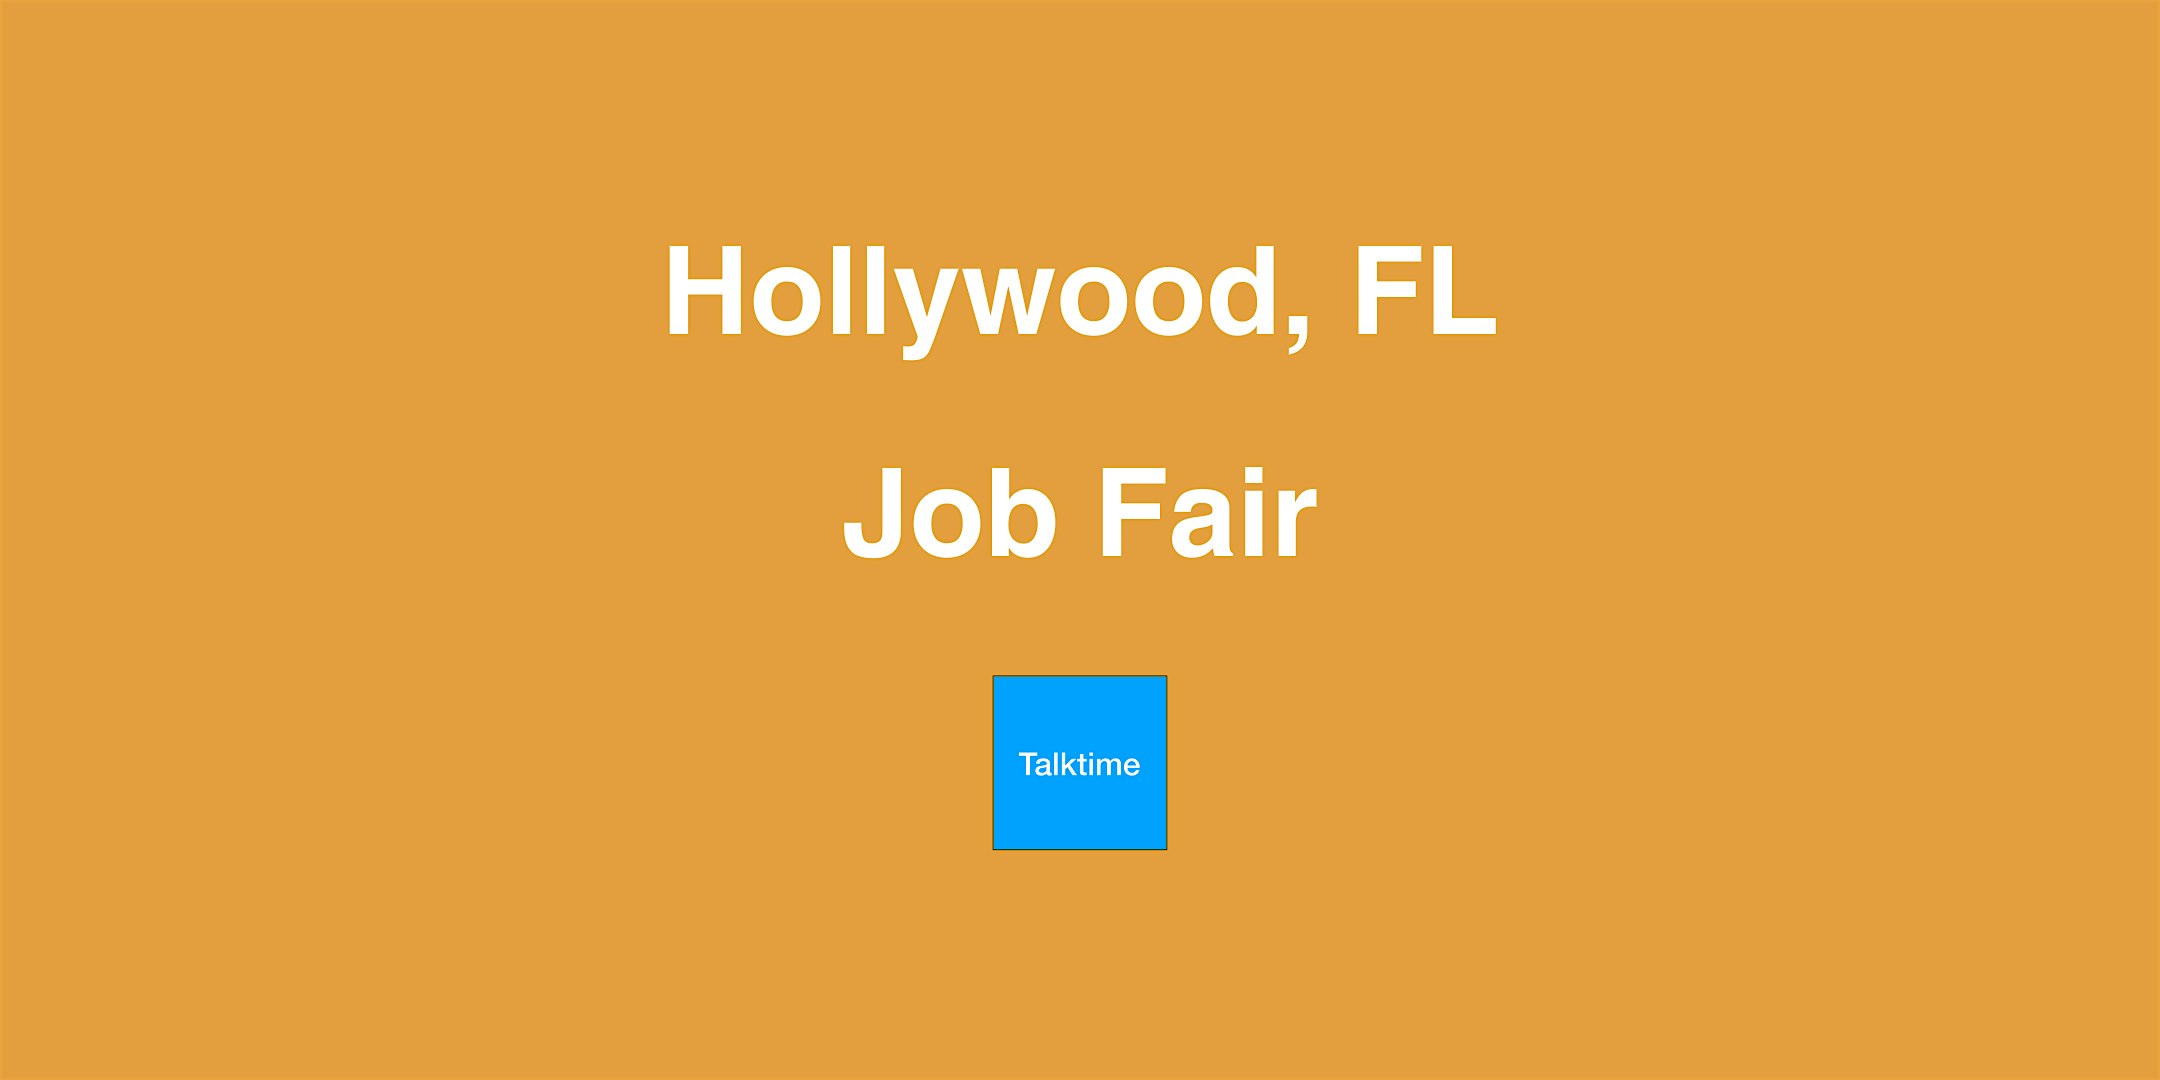 Job Fair - Hollywood